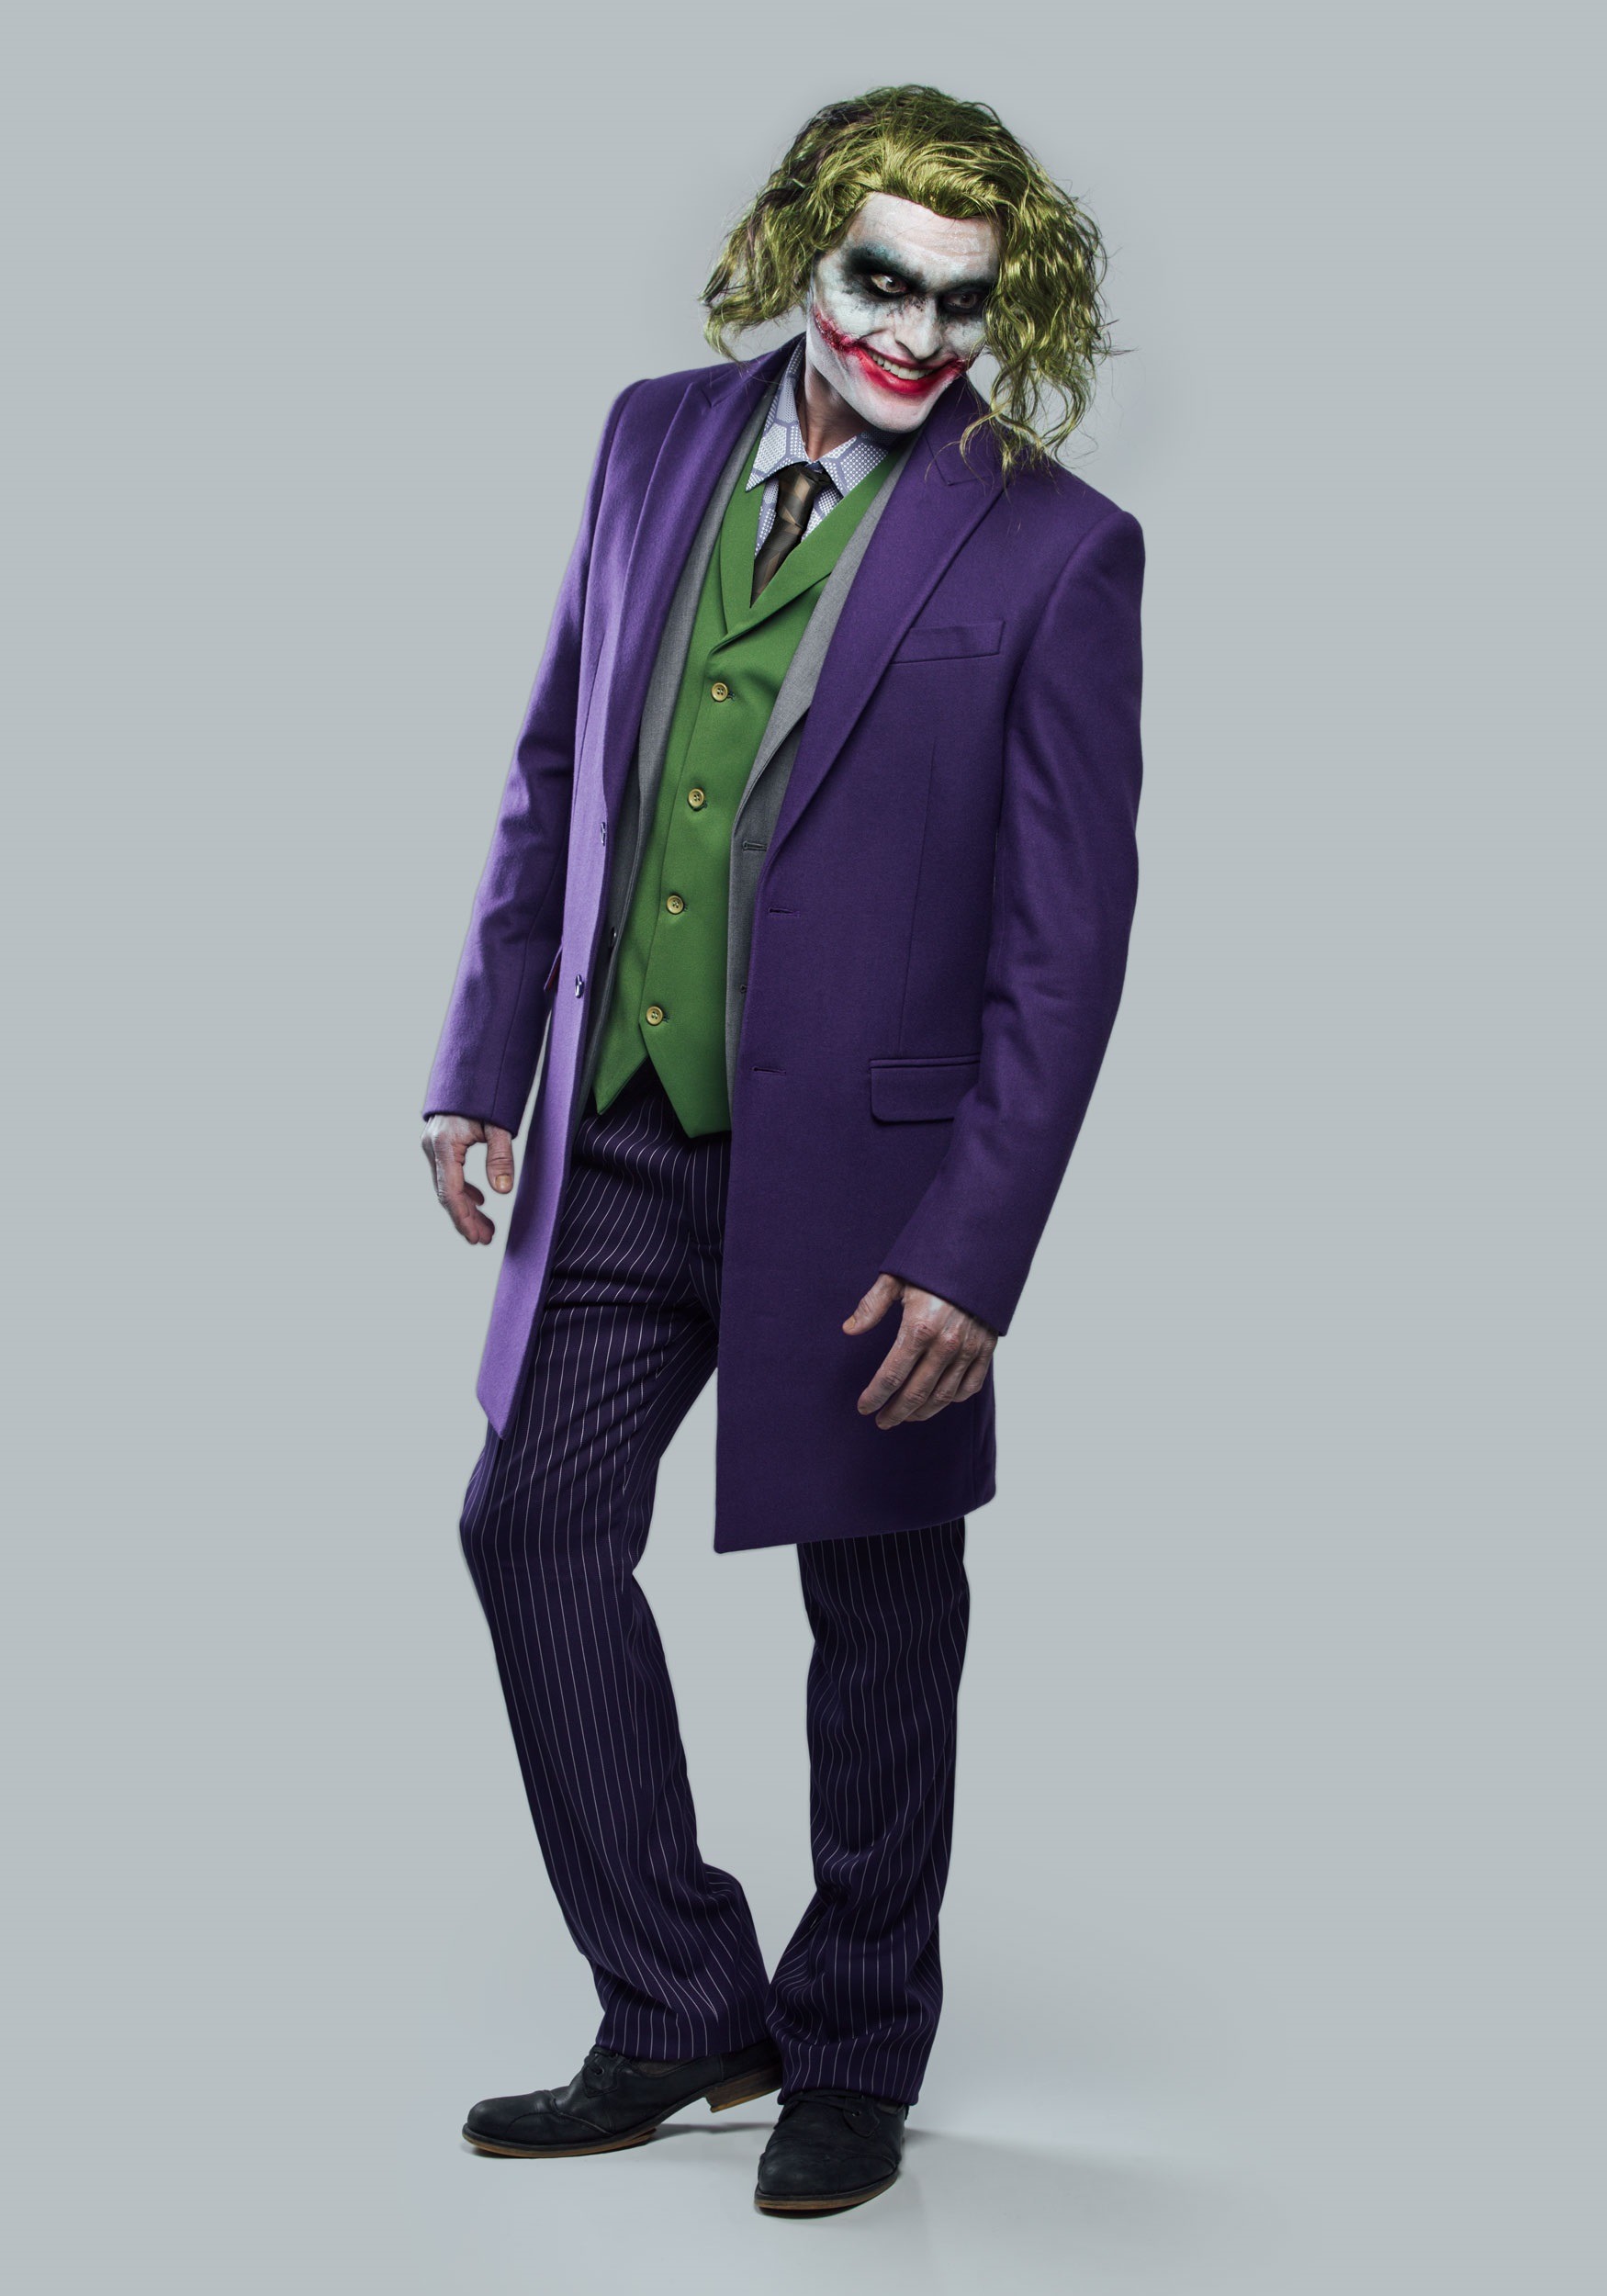 Authentic The Joker Suit